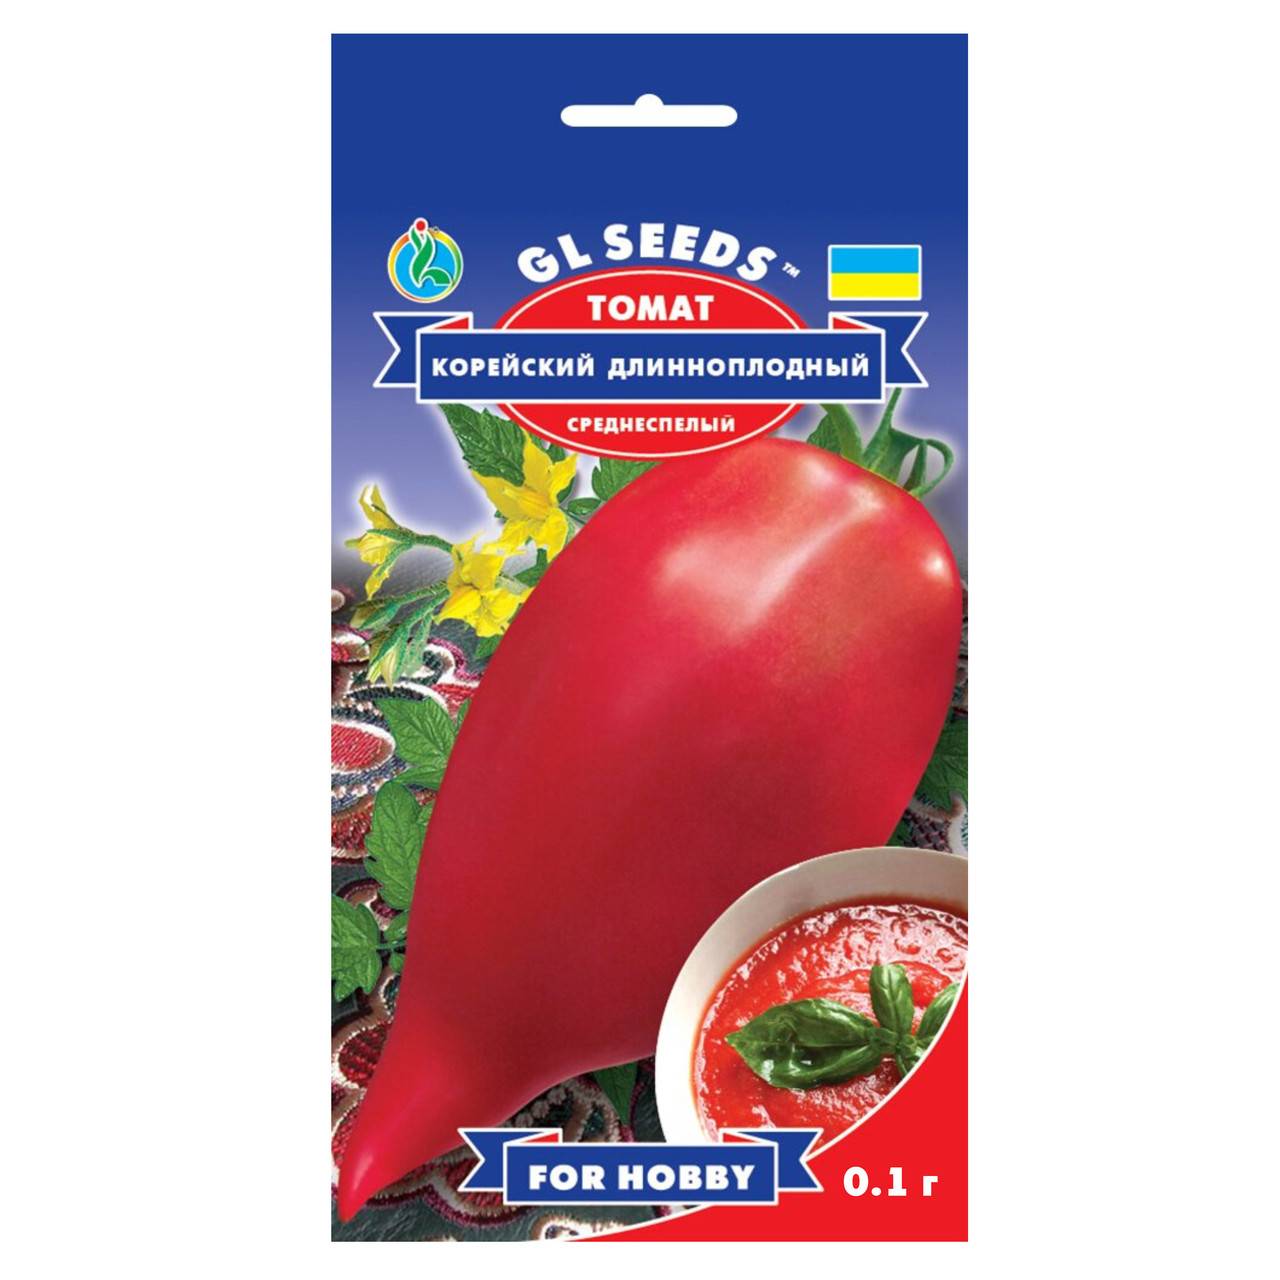 Описание сорта томата Корейский длинноплодный и особенности выращивания